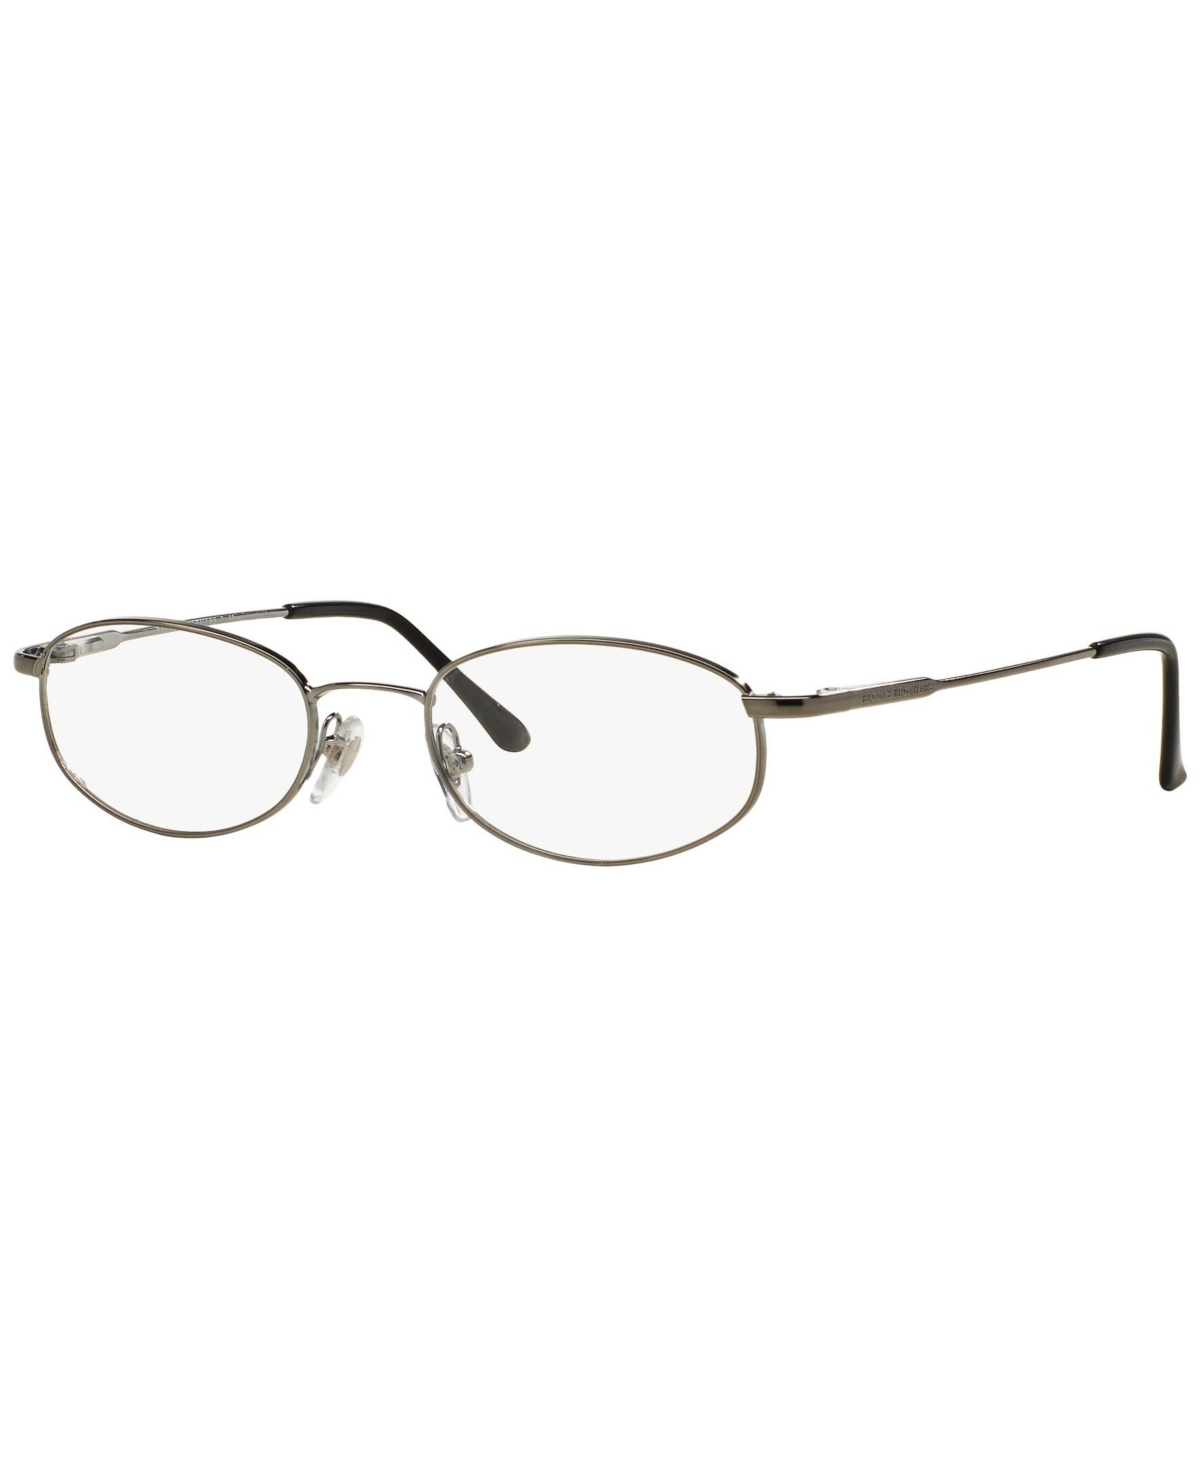 Bb 491 Men's Oval Eyeglasses - Bronze